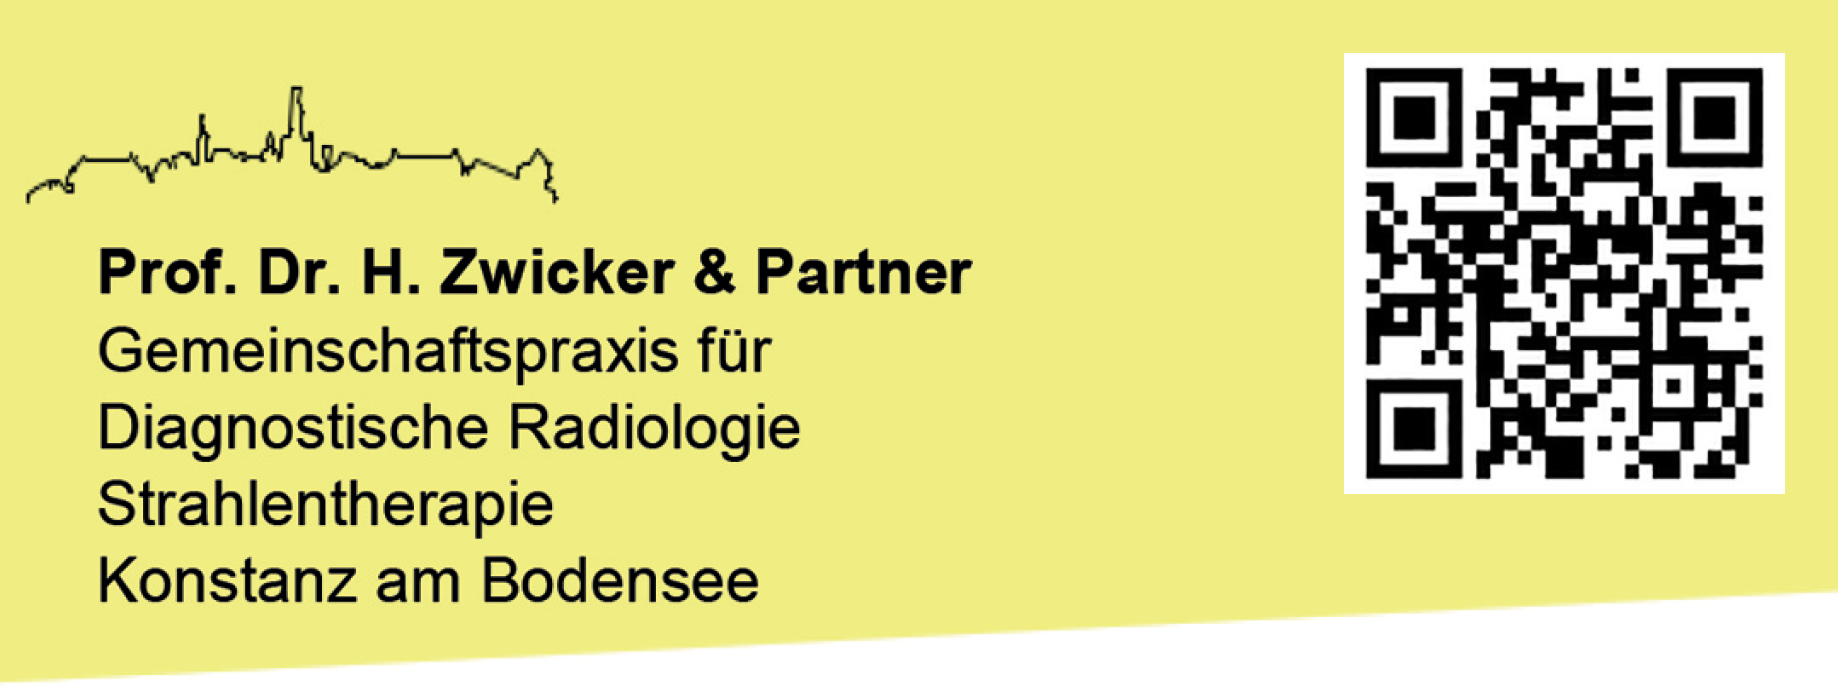 Prof. Dr. H. Zwicker & Partner Gemeinschaftspraxis für Diagnostische Radiologie Strahlentherapie Konstanz am Bodensee